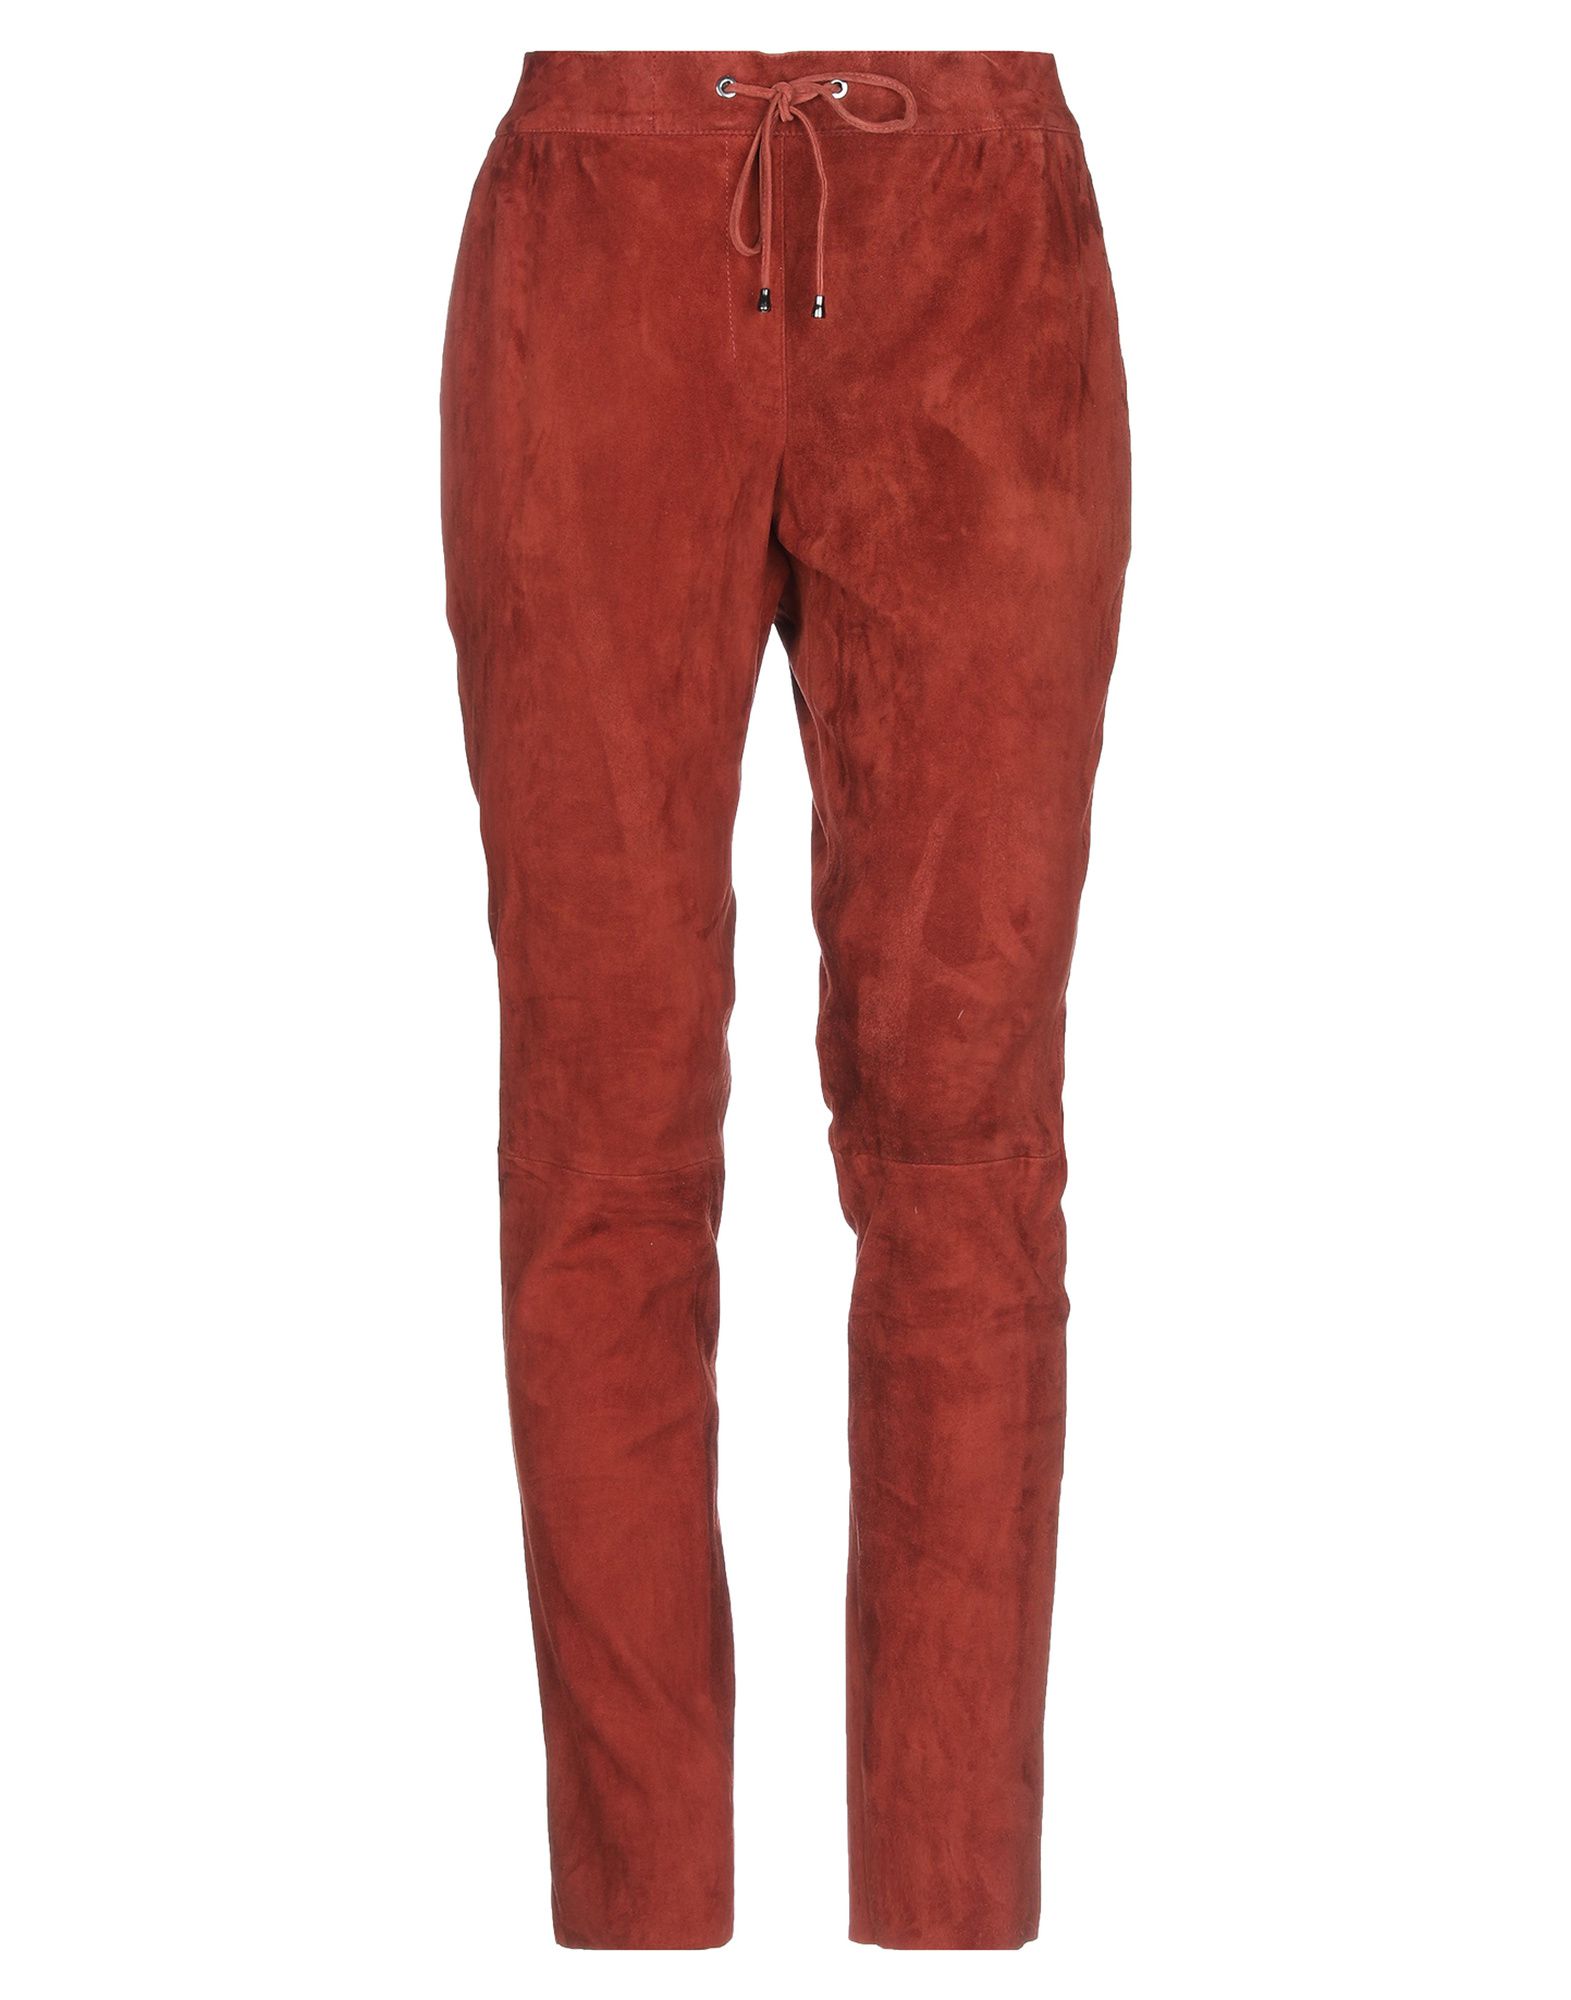 Повседневные брюки  - Красный цвет